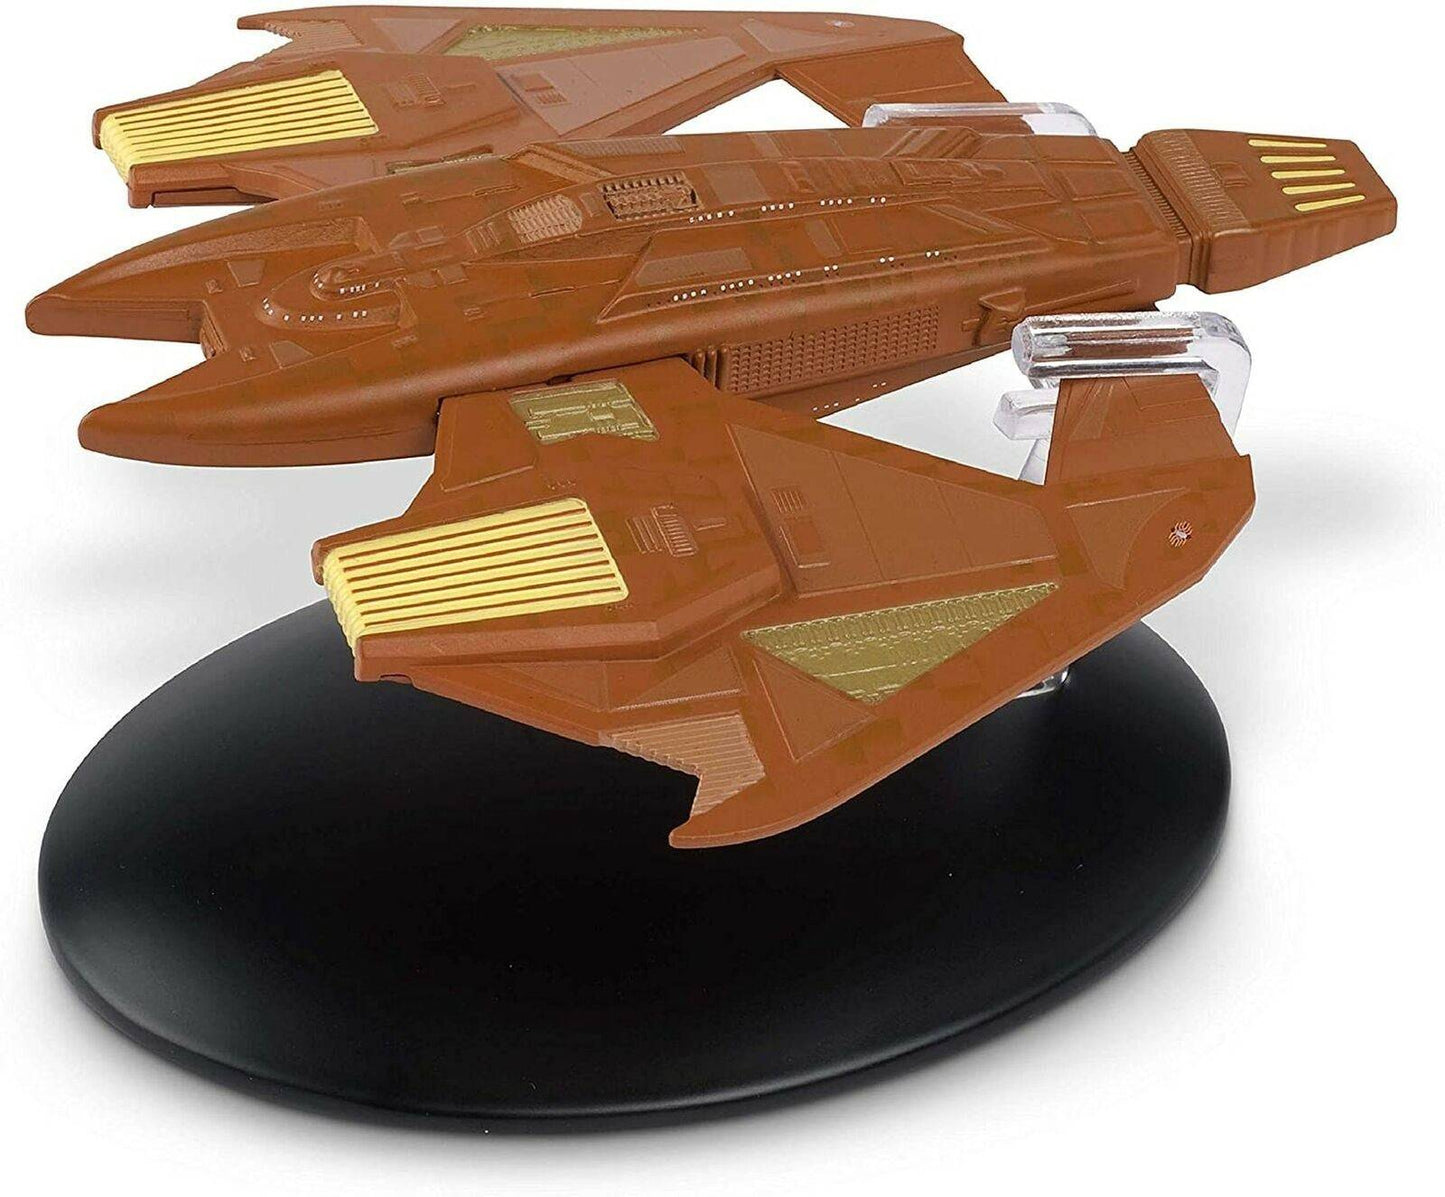 #103 Vidiian Warship Die-Cast Model Ship (Eaglemoss / Star Trek)